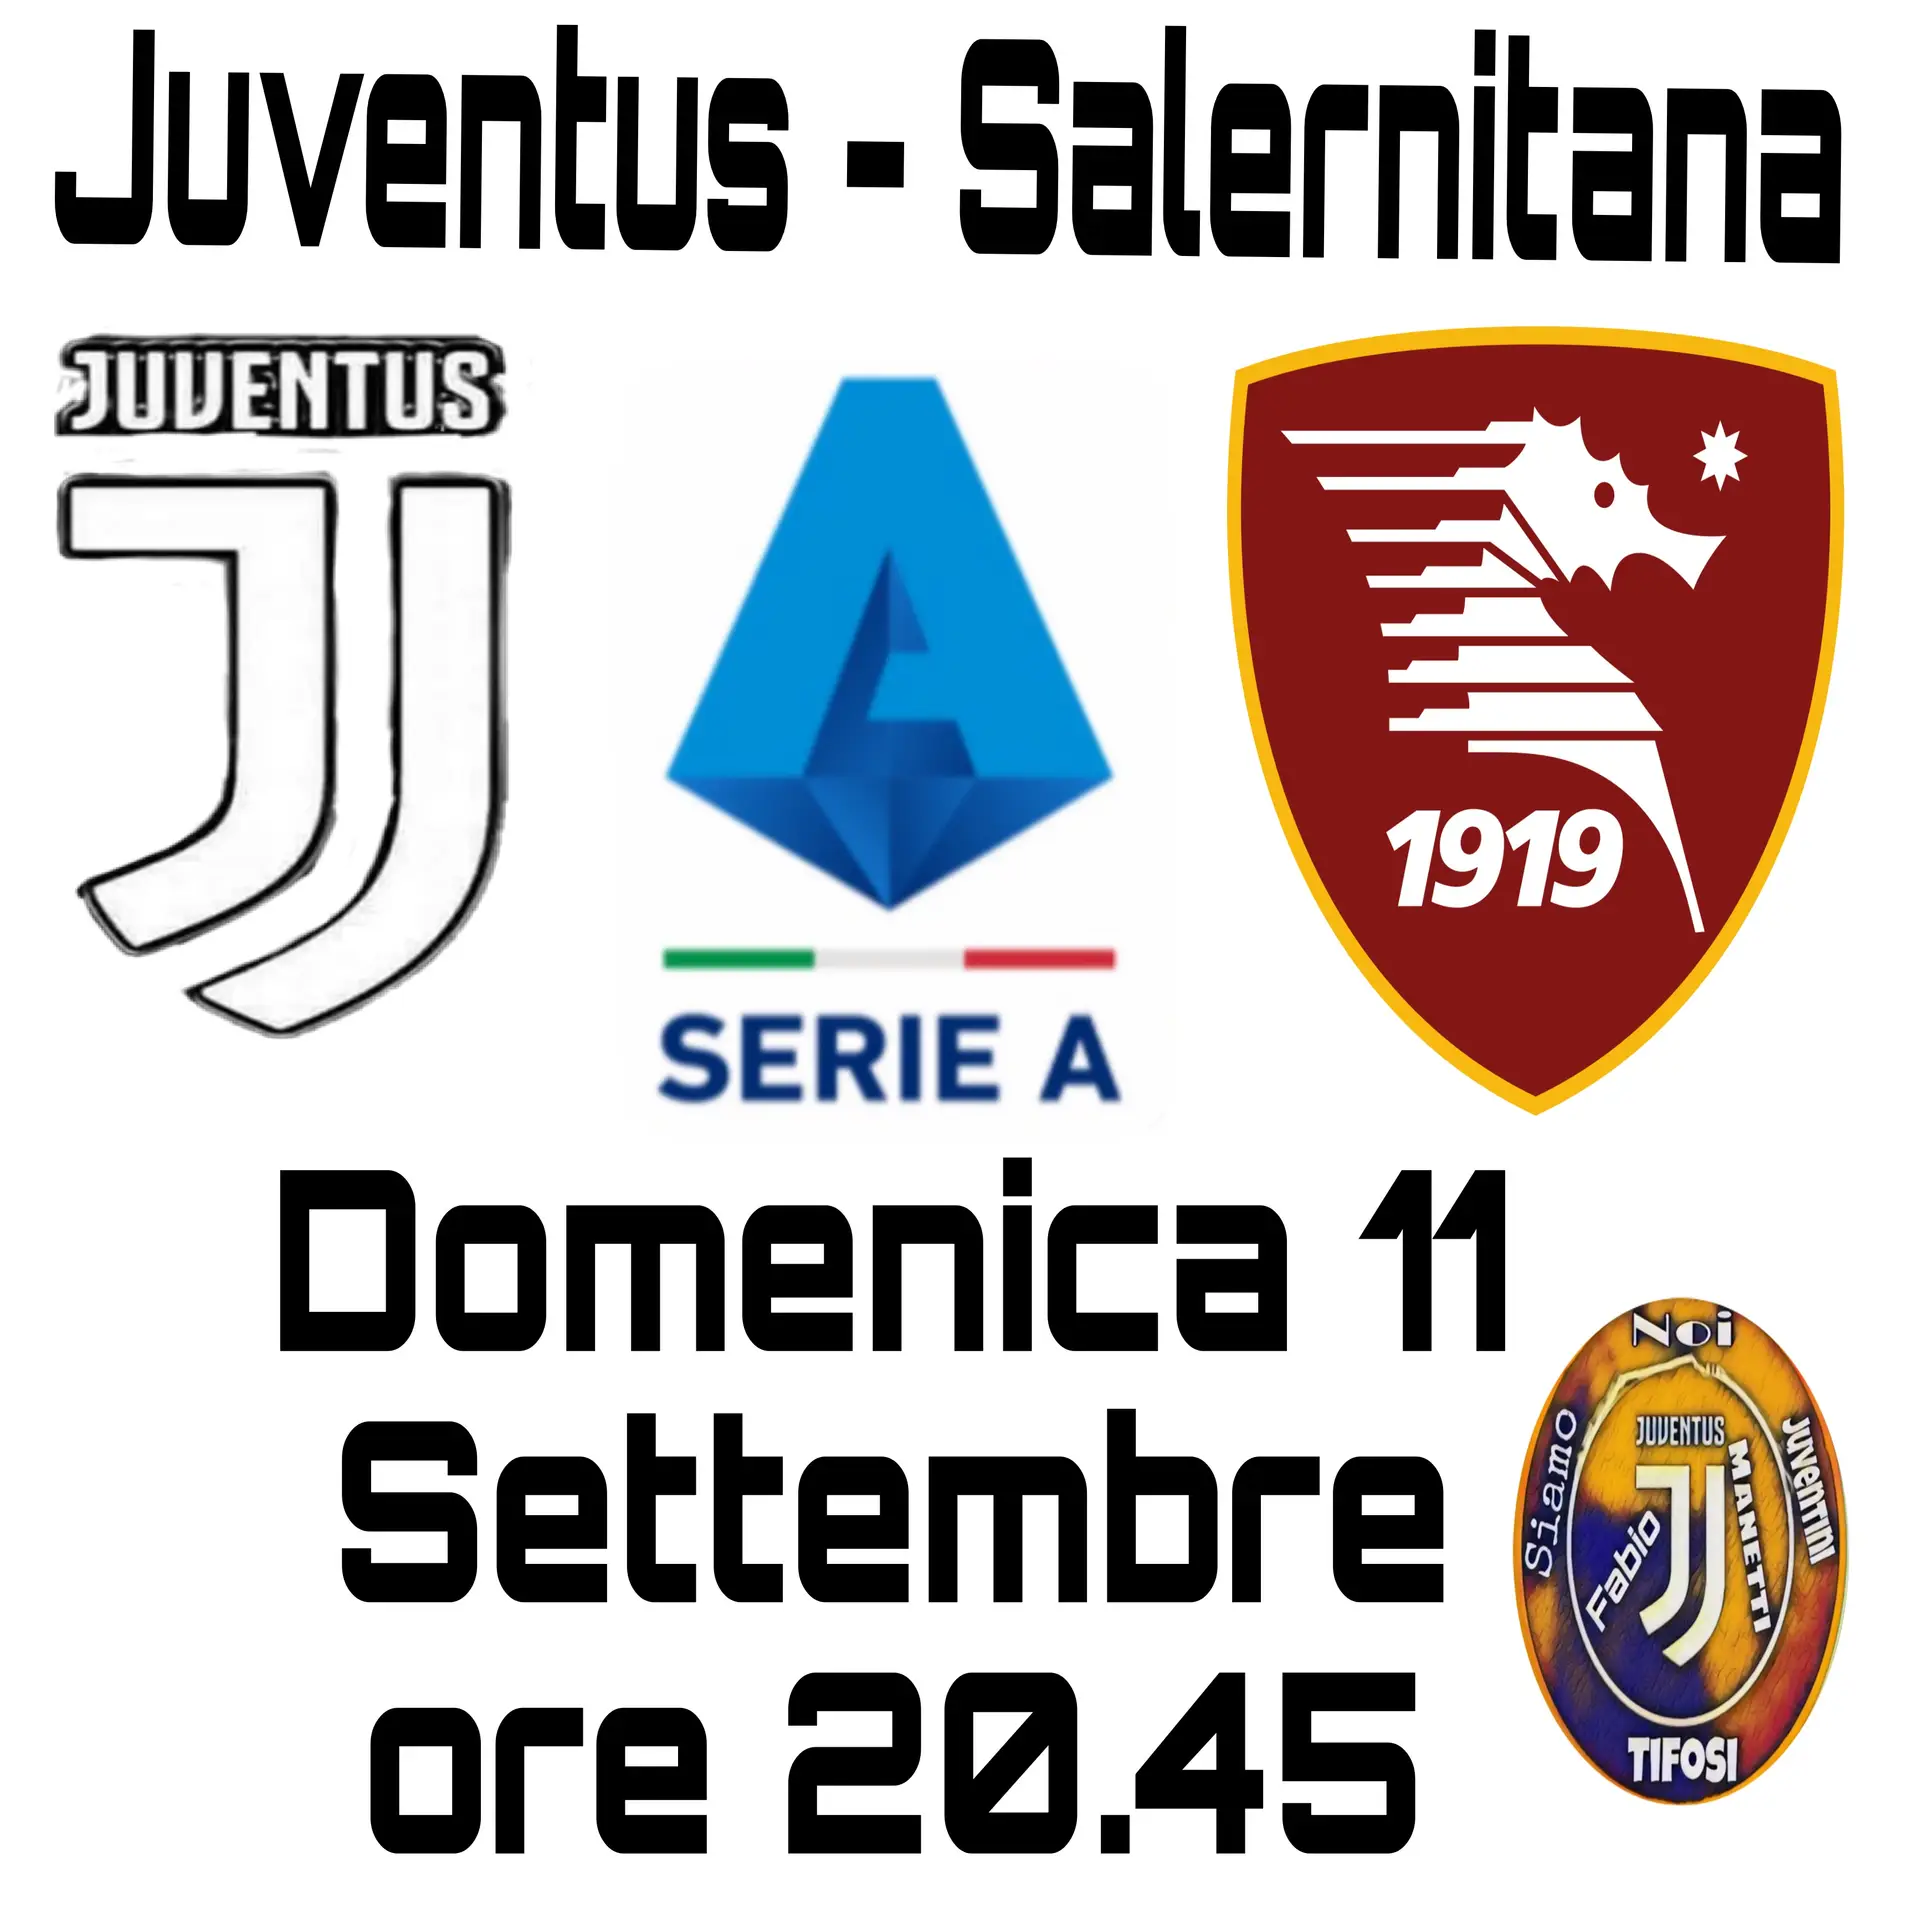 Juventus - Salernitana Domenica 11 Settembre ore 20.45 Diretta Dazn.